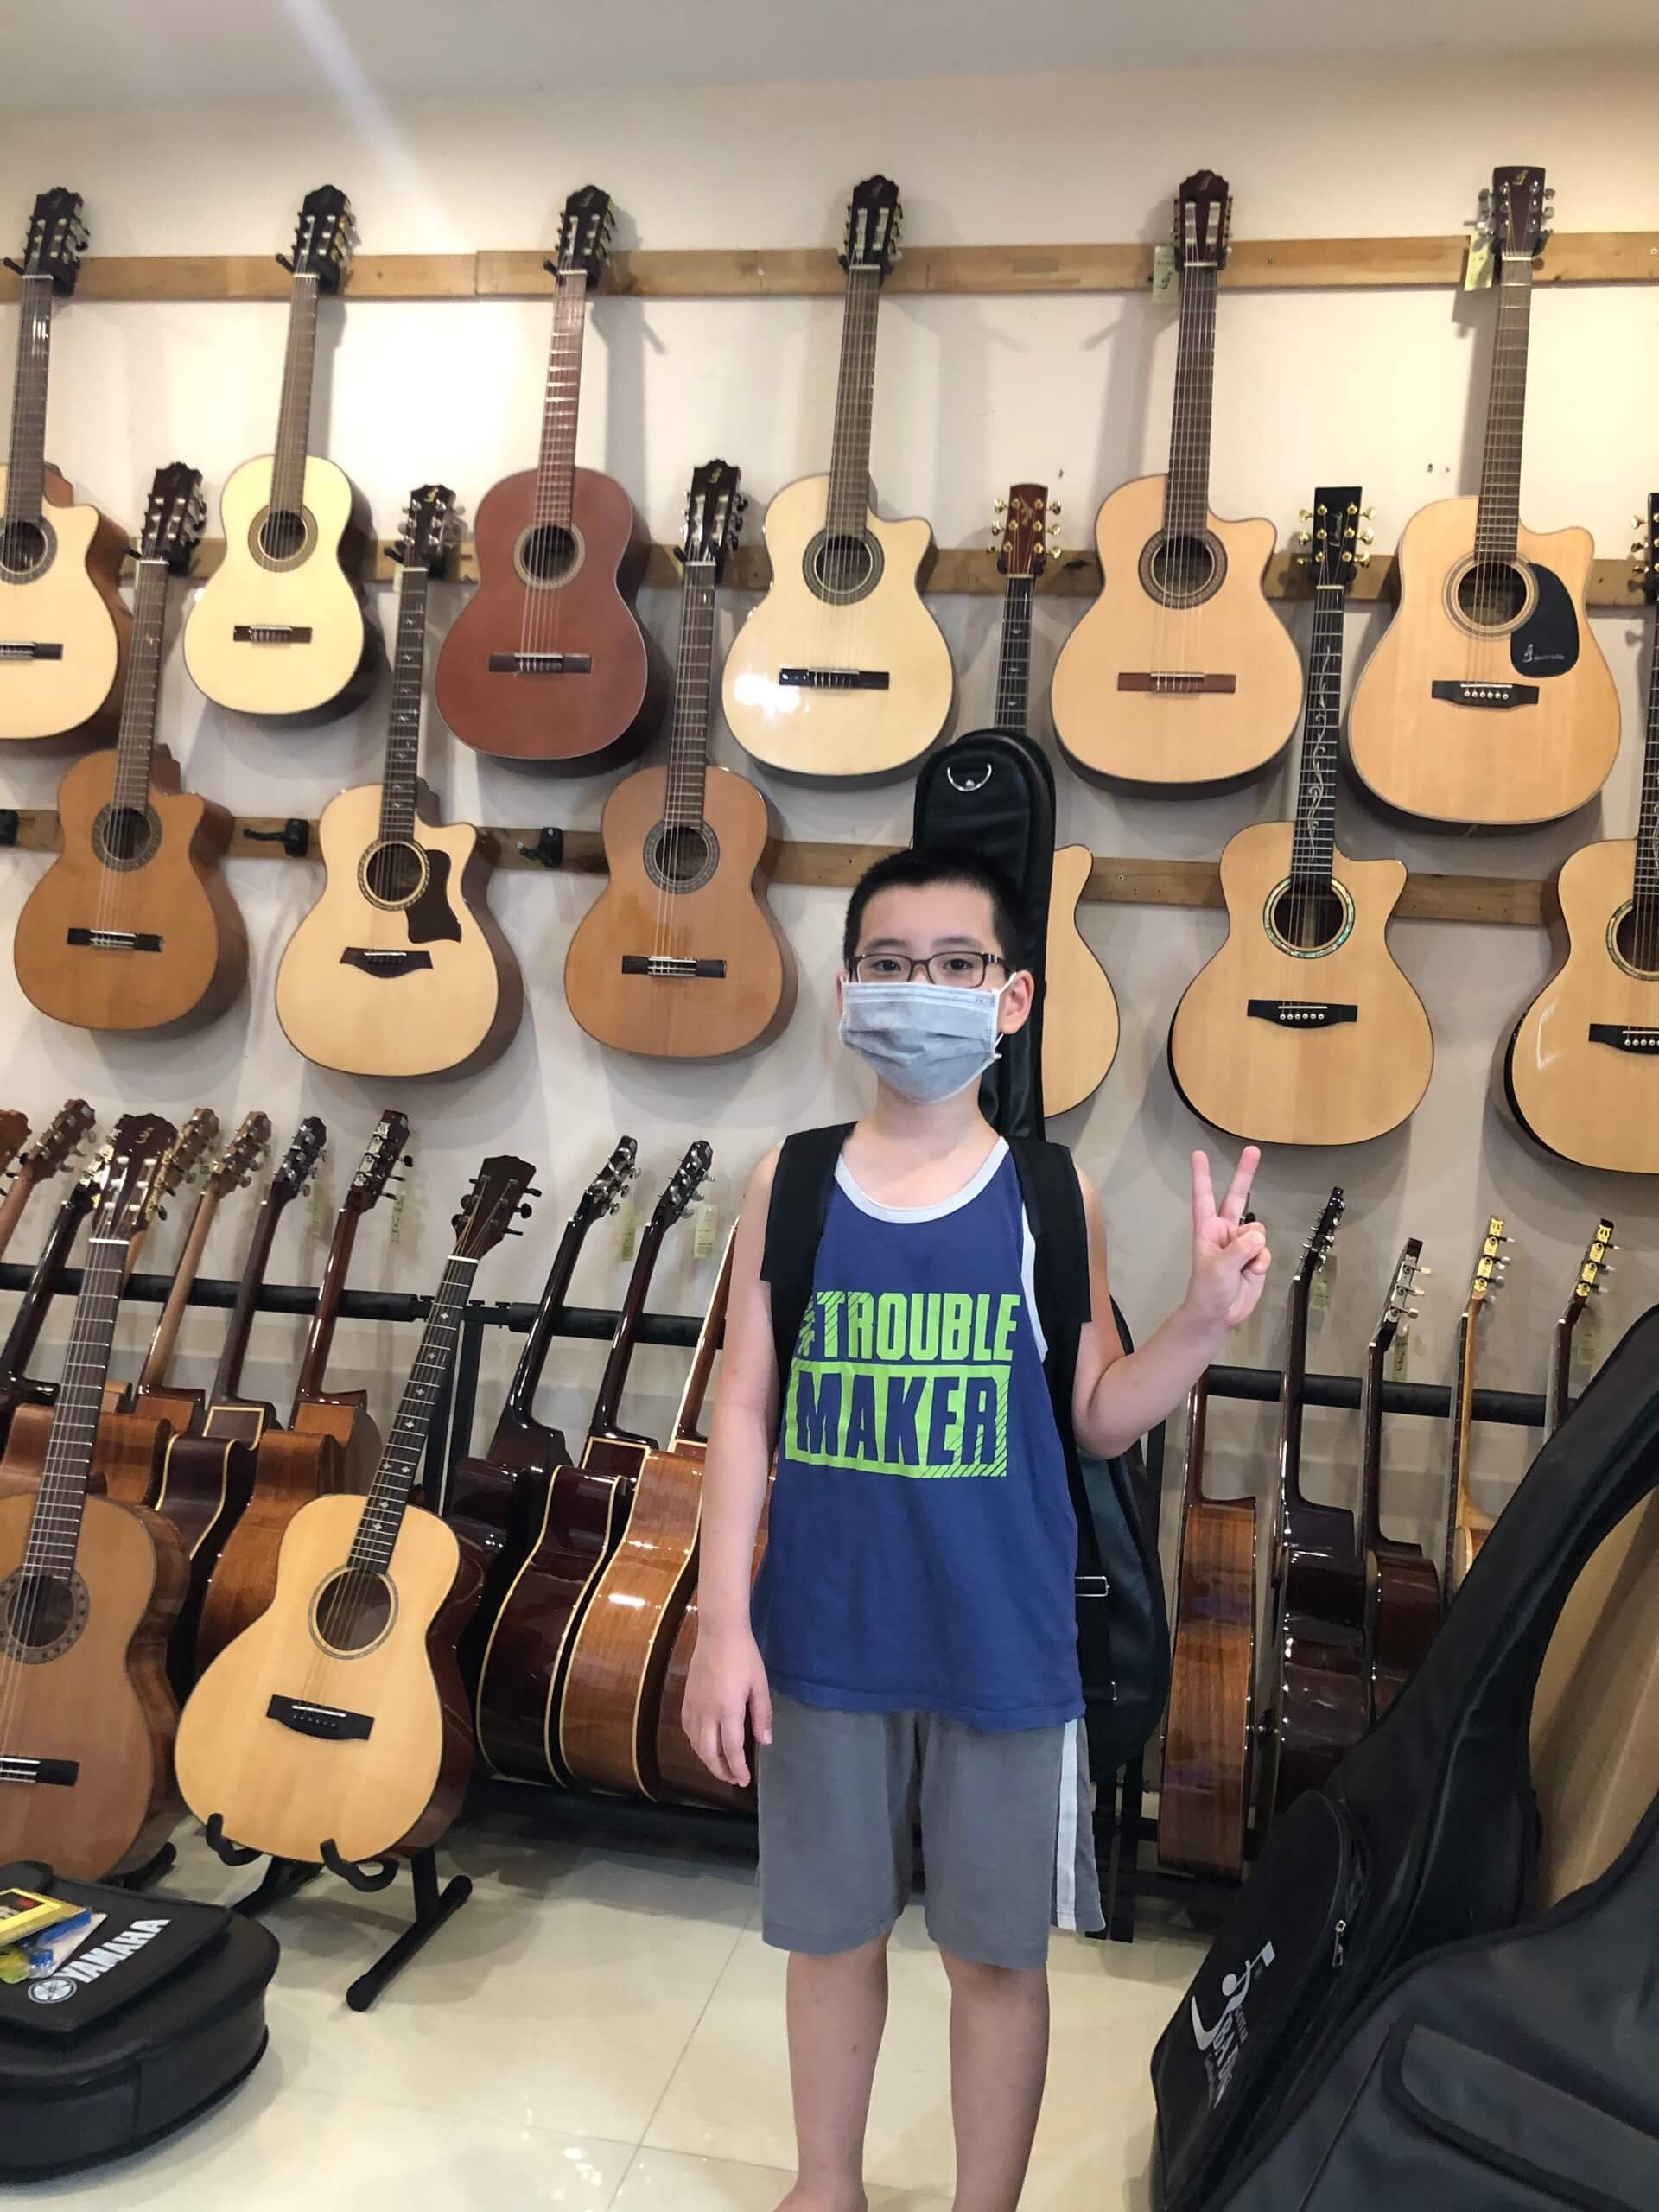 Shop Guitar Gia Lâm Hà Nội, Cửa hàng Bán Guitar, Sửa đàn Guitar Uy Tín Hà Nội